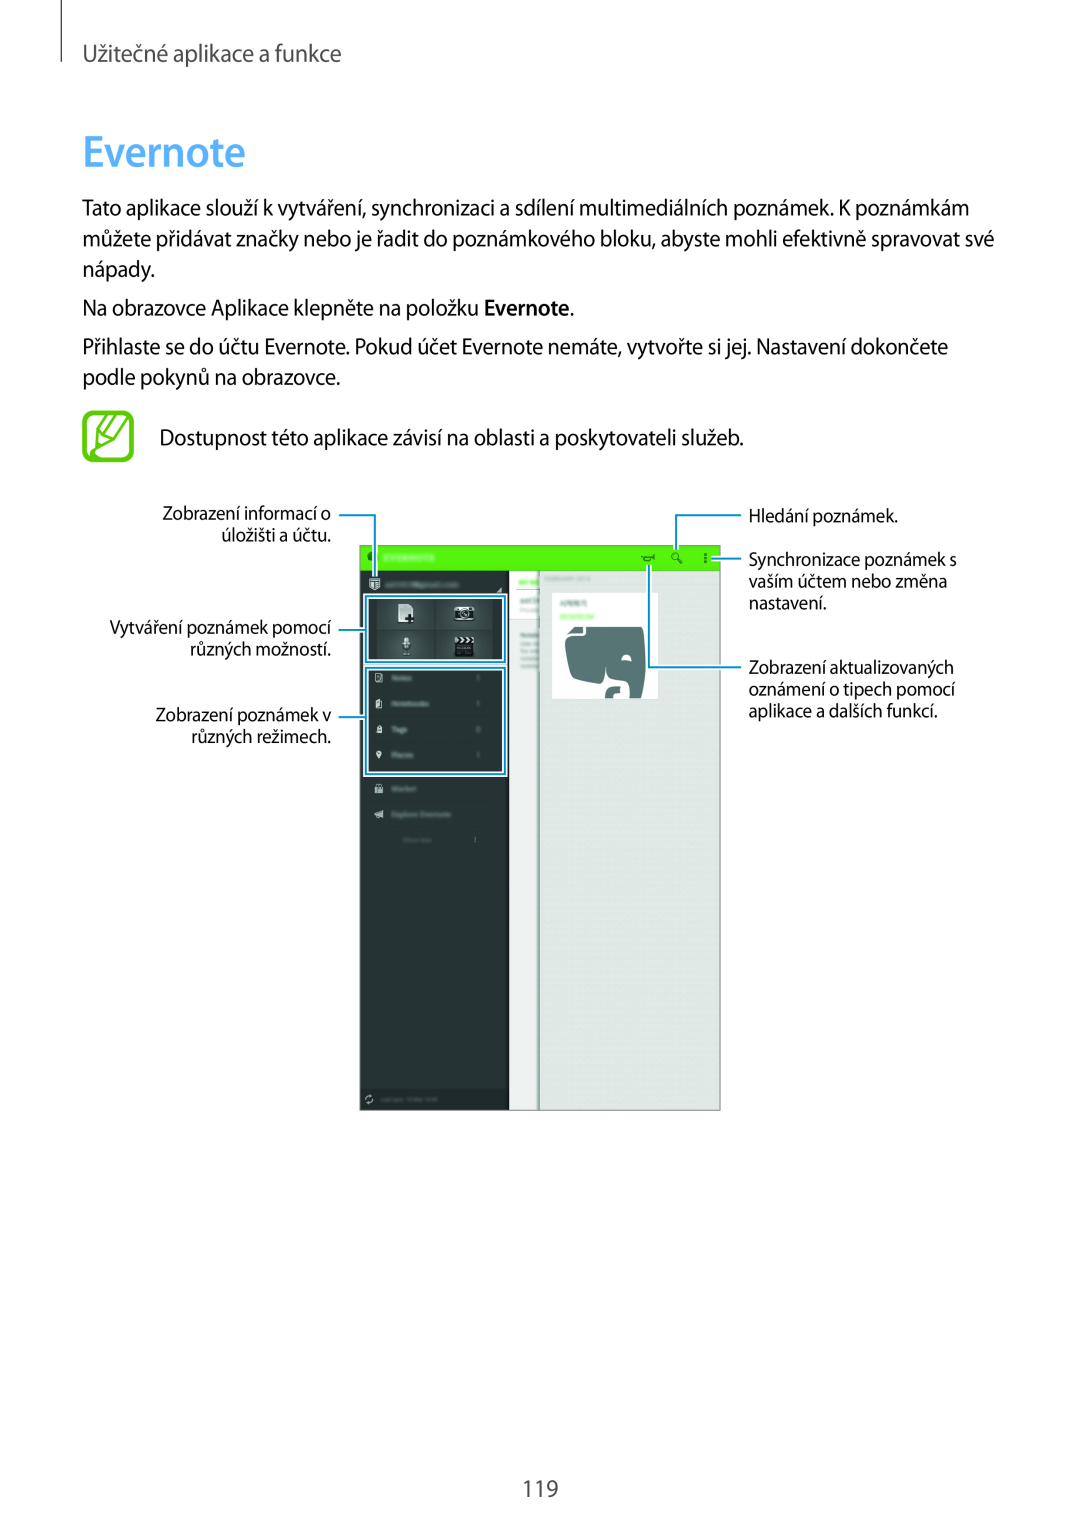 Samsung SM-T700NZWAXSK manual Evernote, Užitečné aplikace a funkce, Zobrazení poznámek různých režimech, Hledání poznámek 